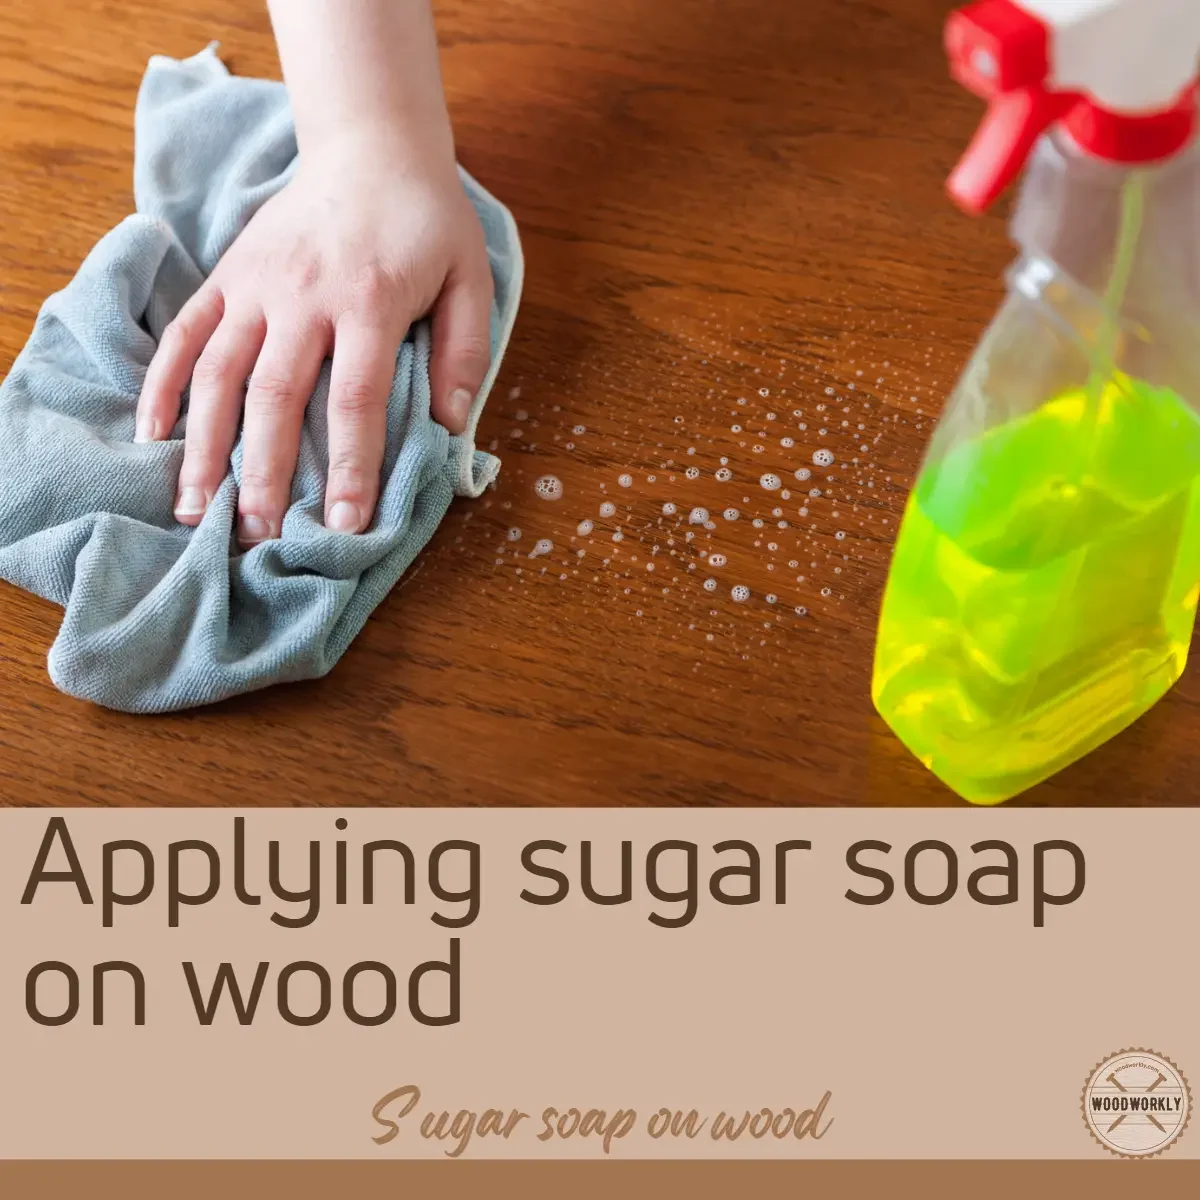 Applying sugar soap on wood